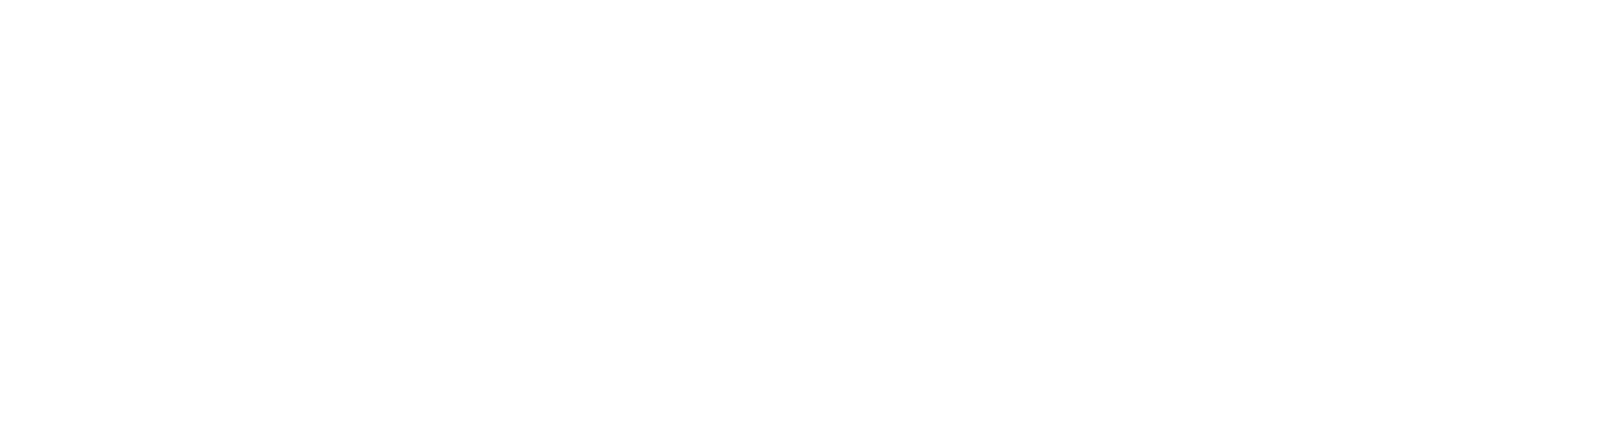 Dexus Logo groß für dunkle Hintergründe (transparentes PNG)